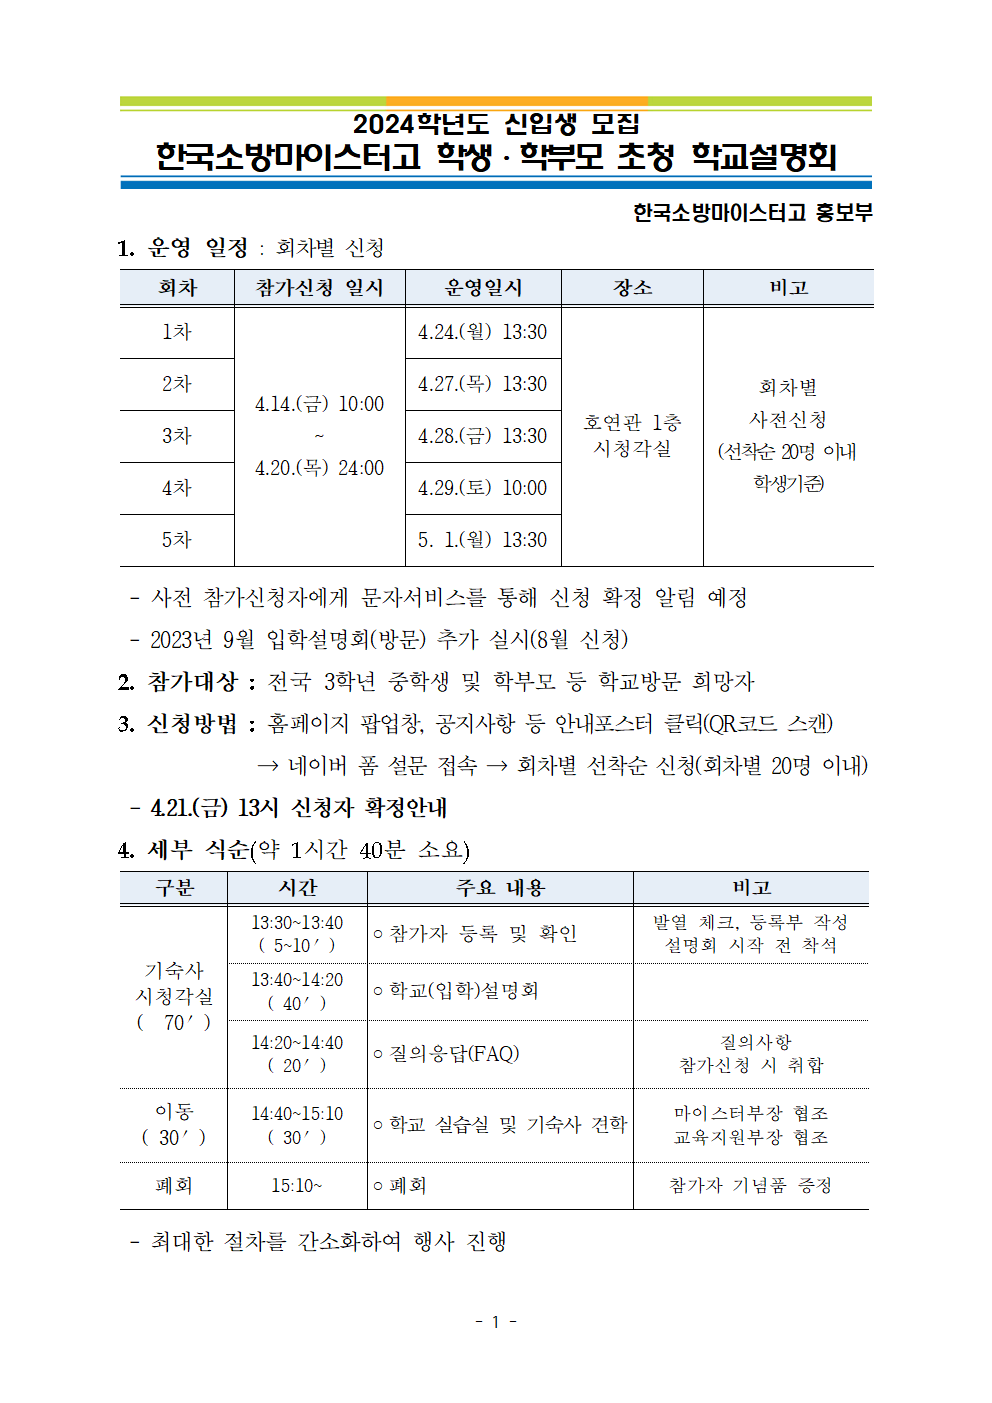 한국소방마이스터고 학교설명회 계획001